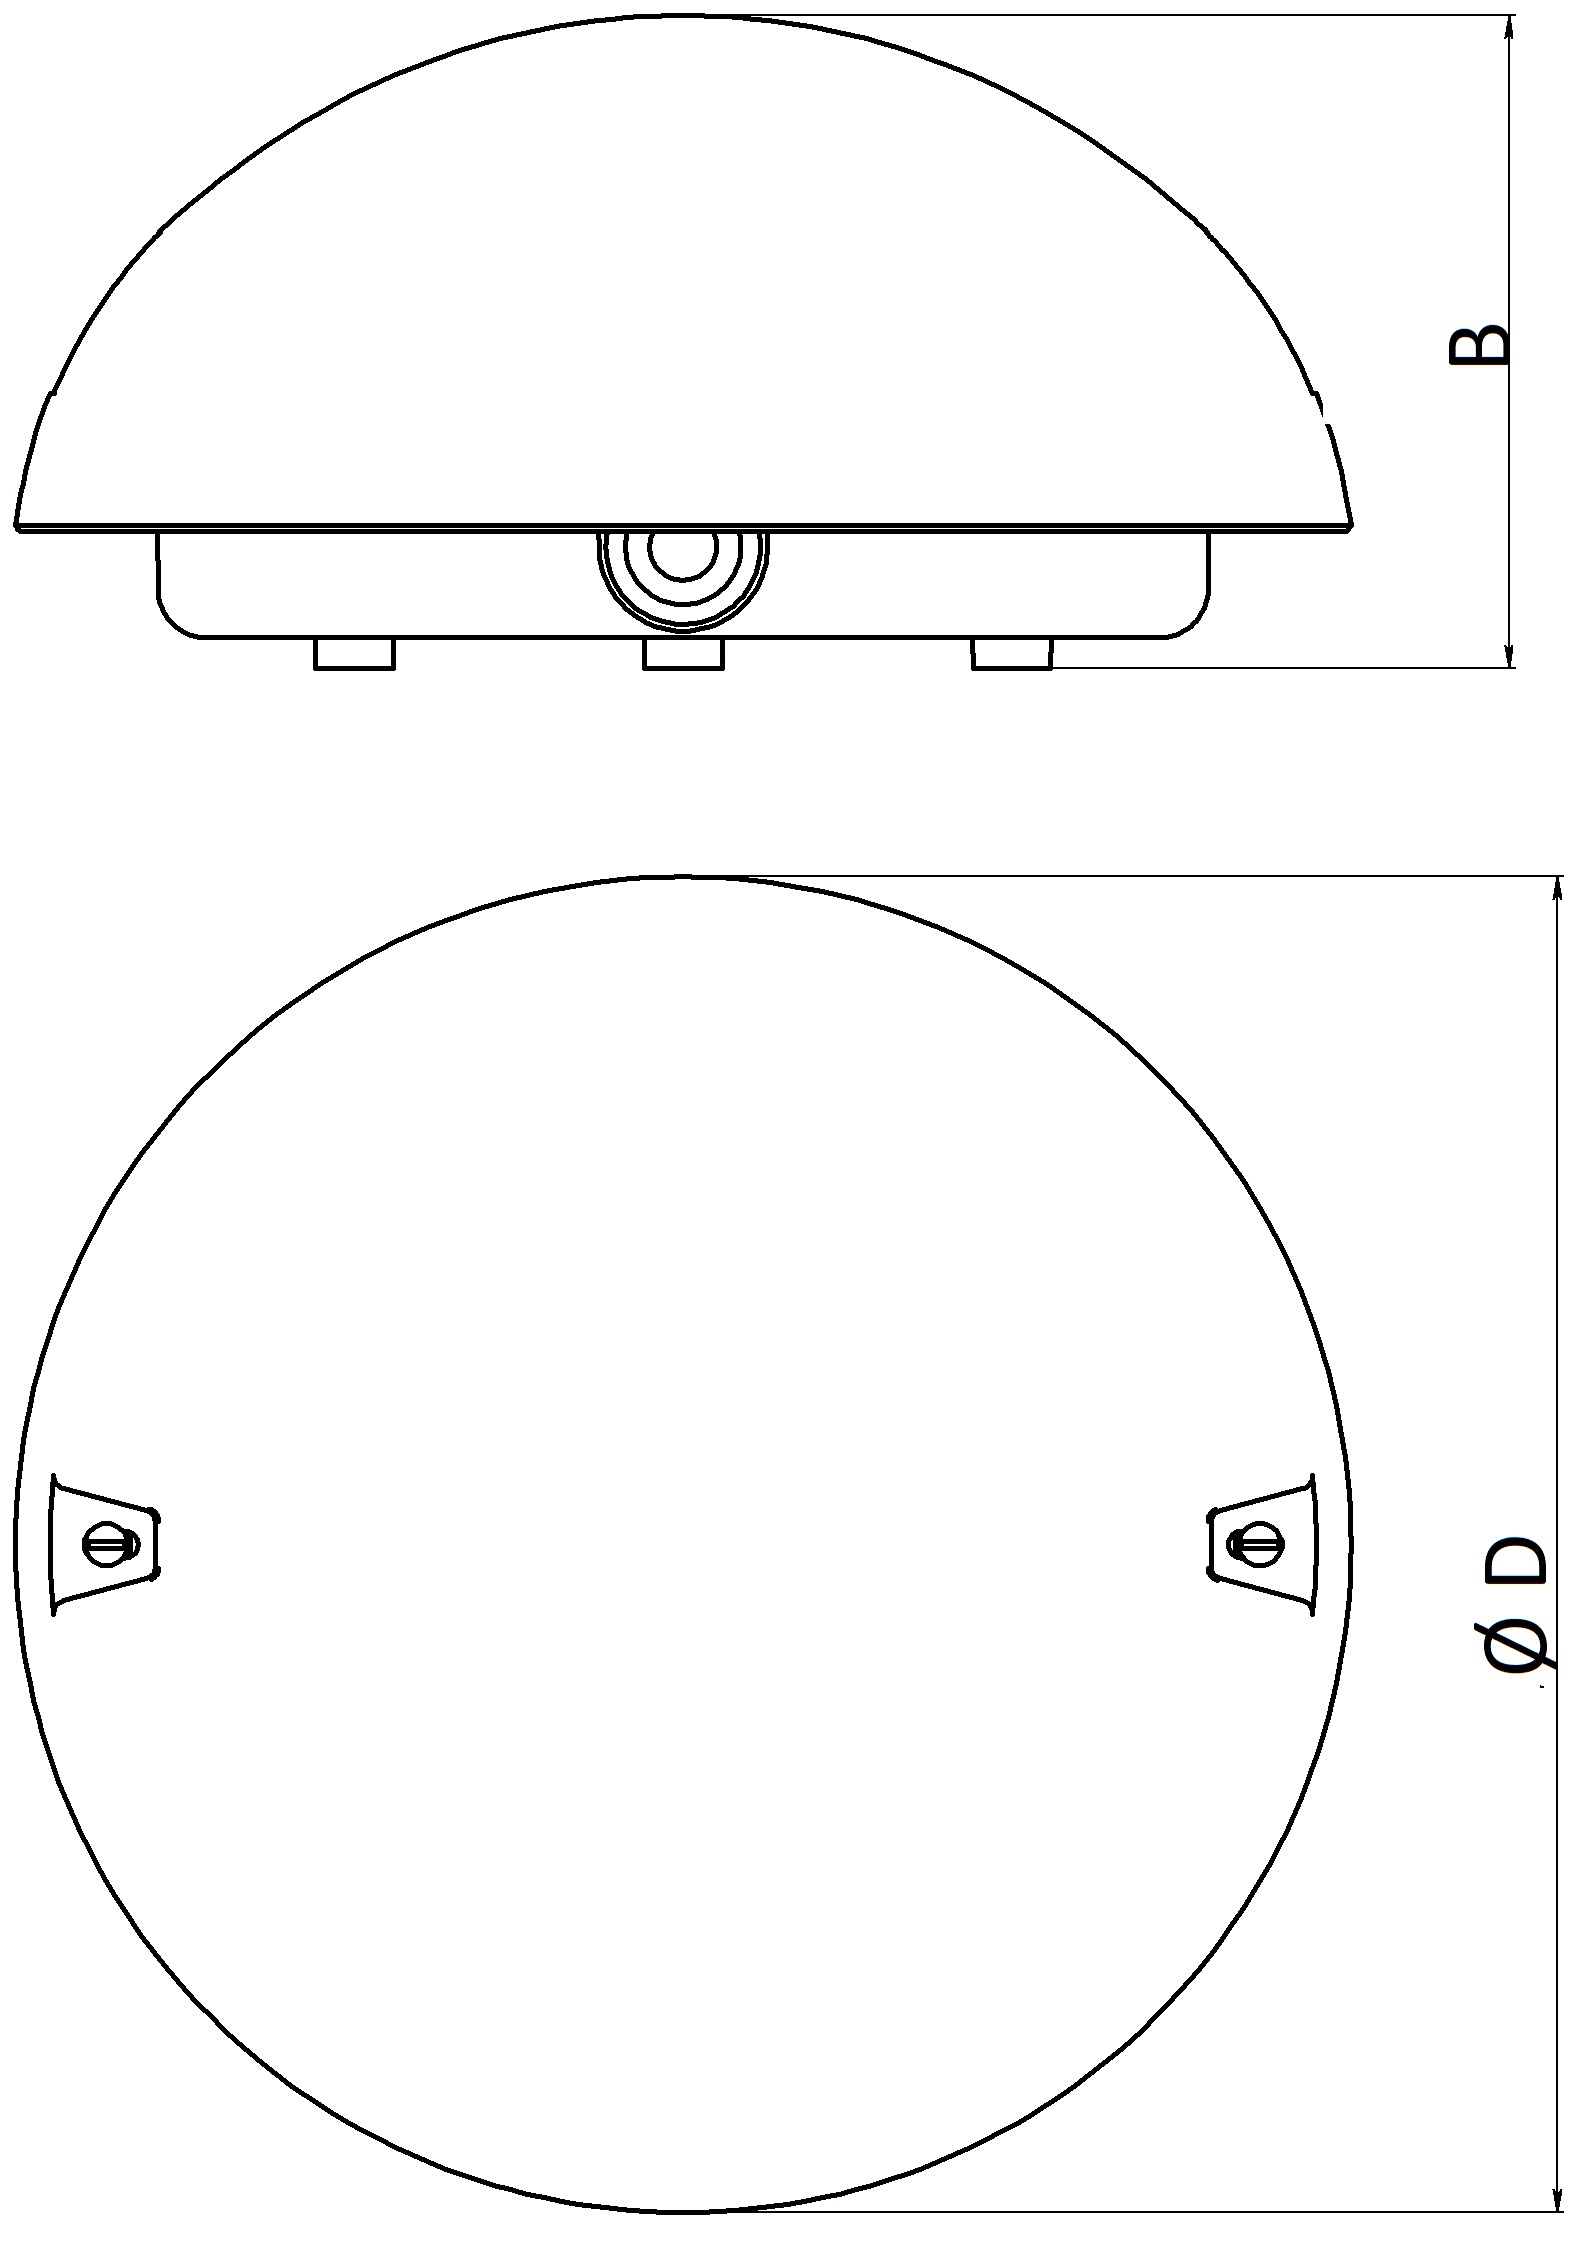 Светильники промышленные ЭРА Сириус 60Вт, цоколь E27, IP54, форма - круг, цвет - белый